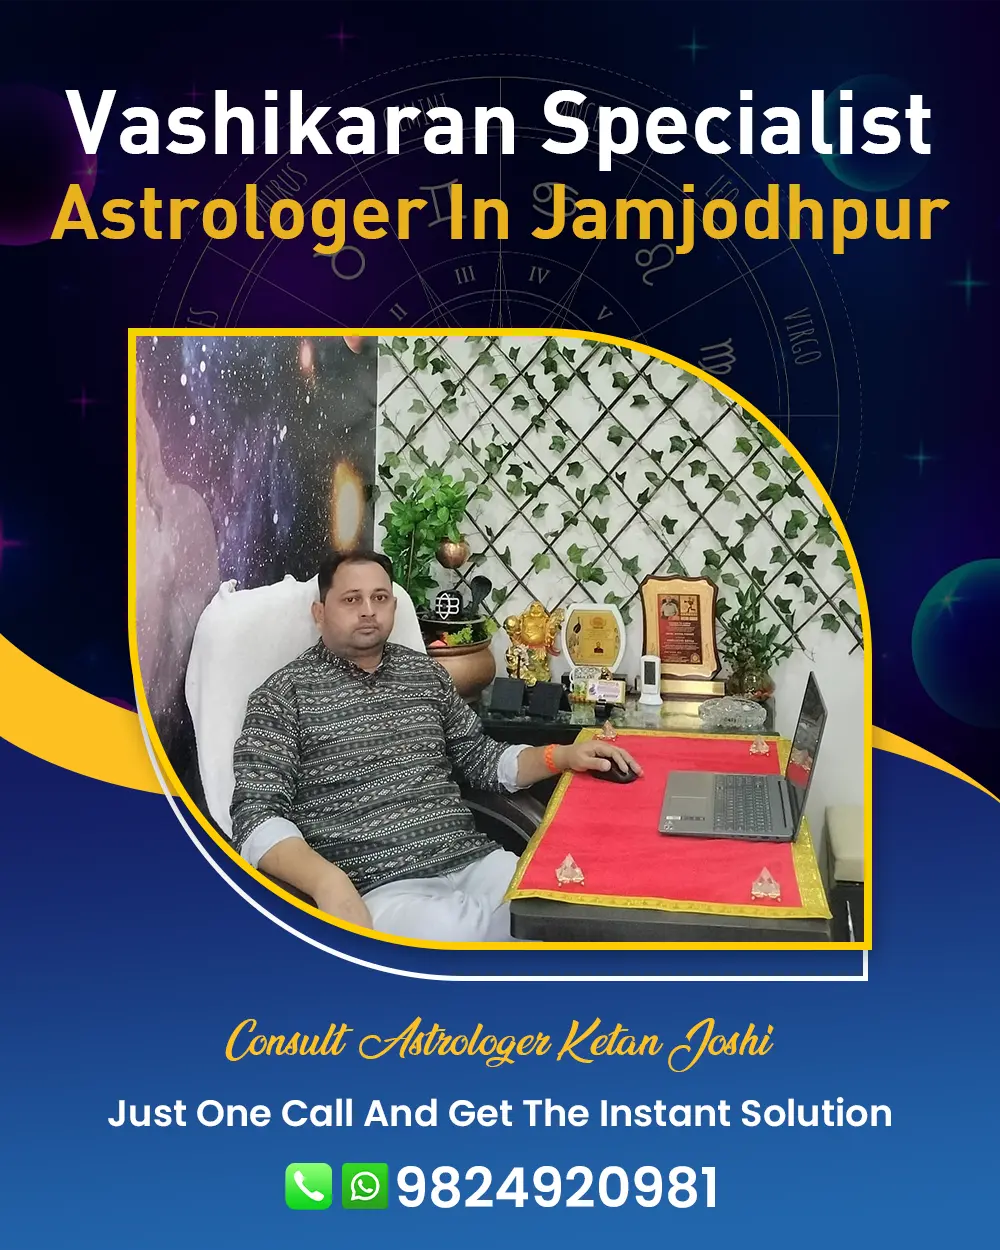 Vashikaran Specialist Astrologer In Jamjodhpur